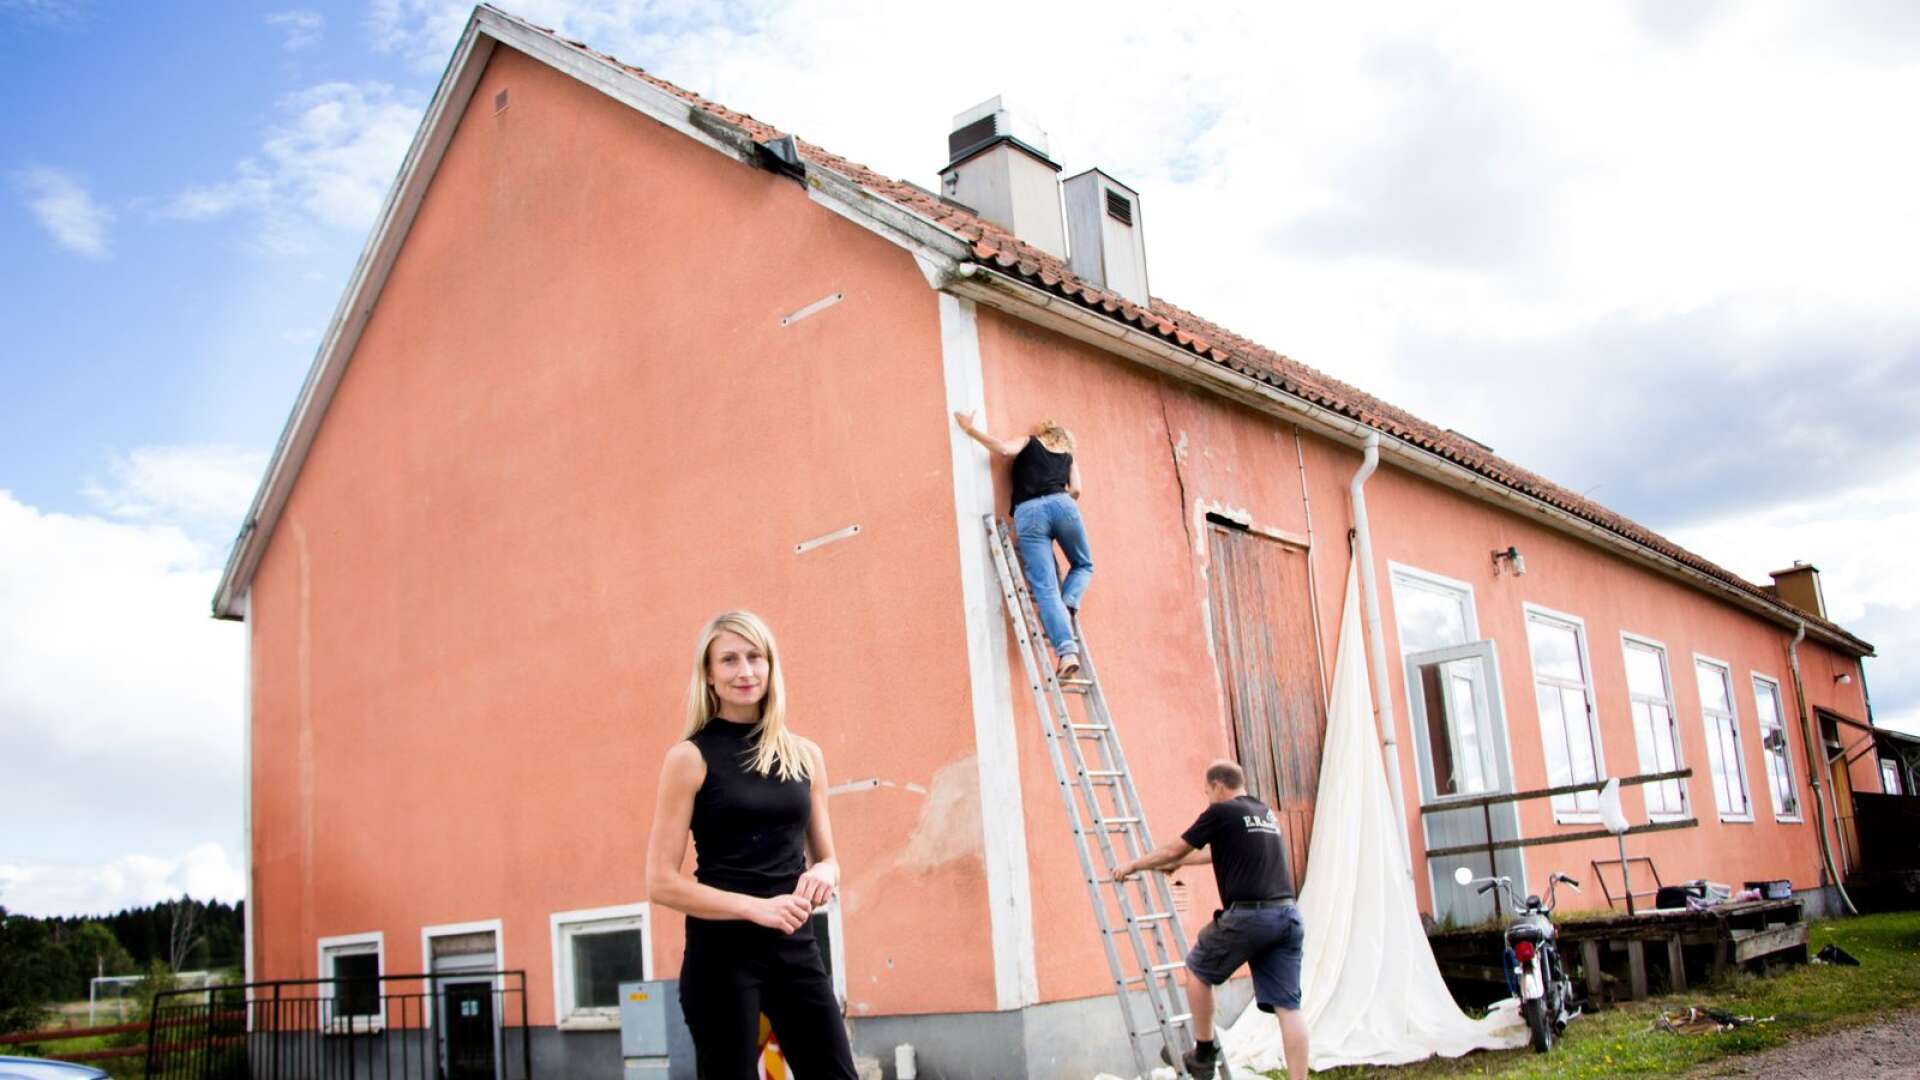 Stella Broos gjuter nytt liv i Sjösala. Koreografen Anna Asplind och Anders från bygdeföreningen hjälper till.